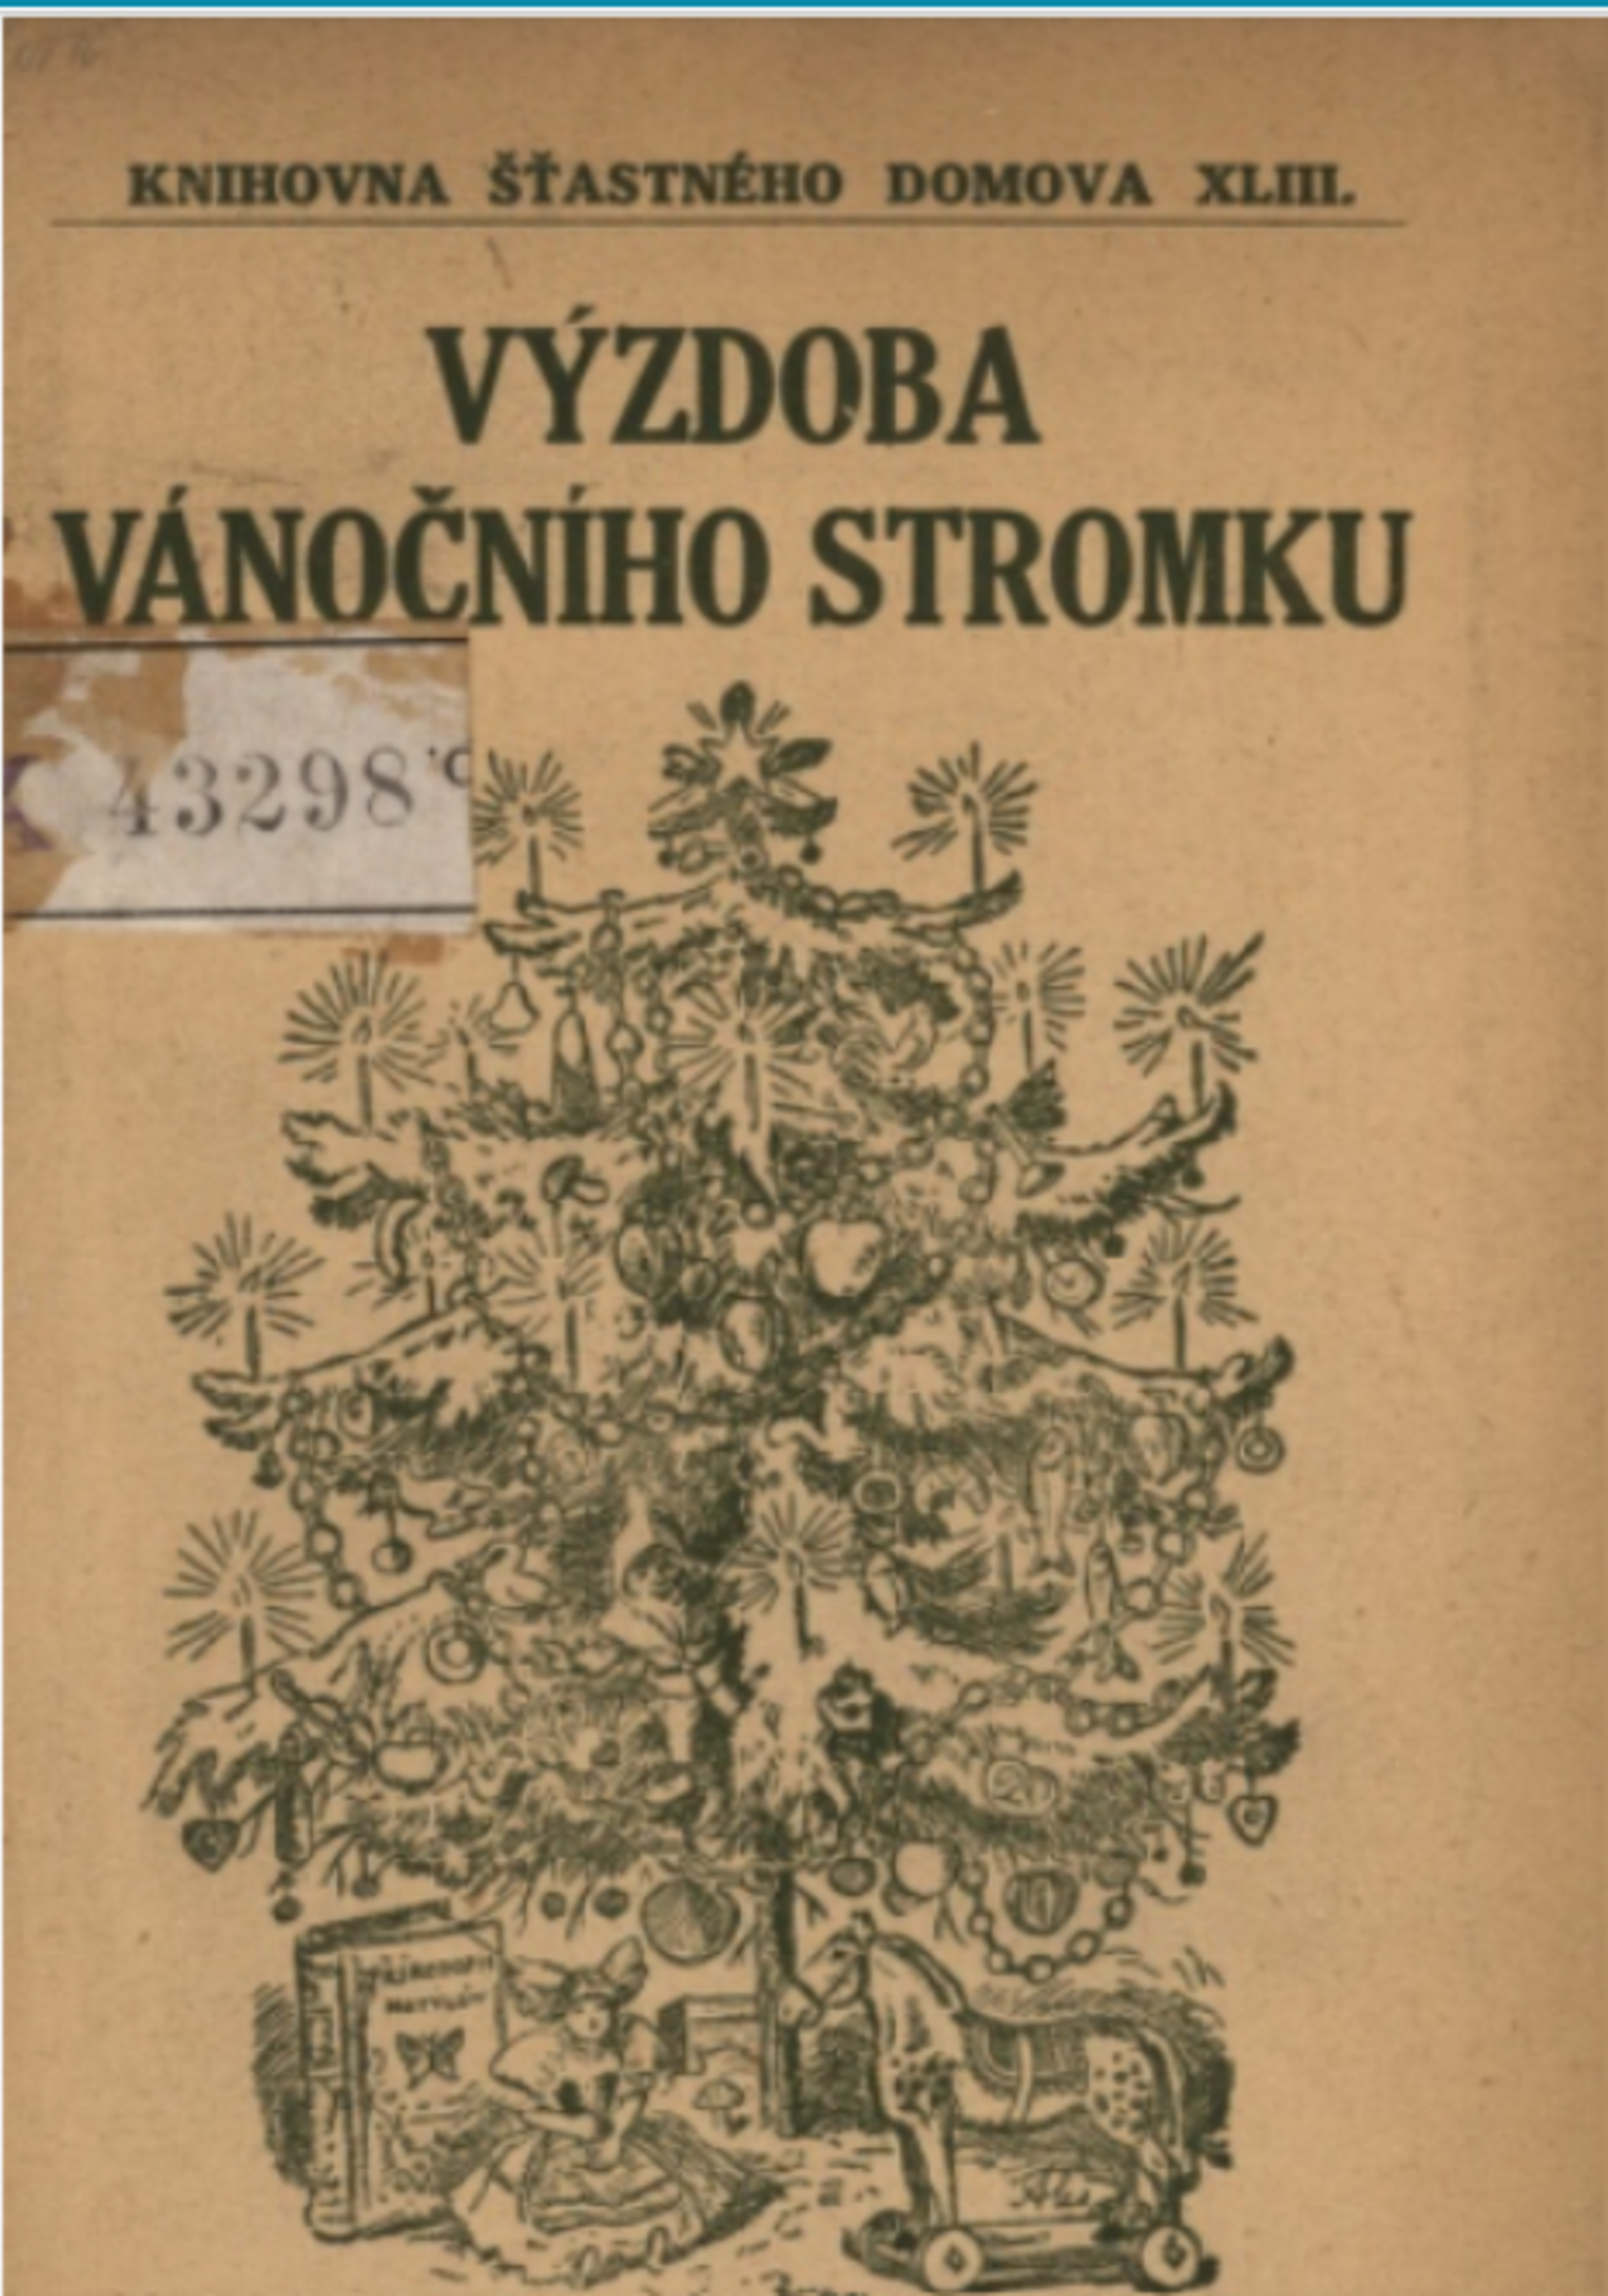 Výzdoba vánočního stromku, Praha 1916. Zdroj Kramerius, Národní knihovna v Praze.